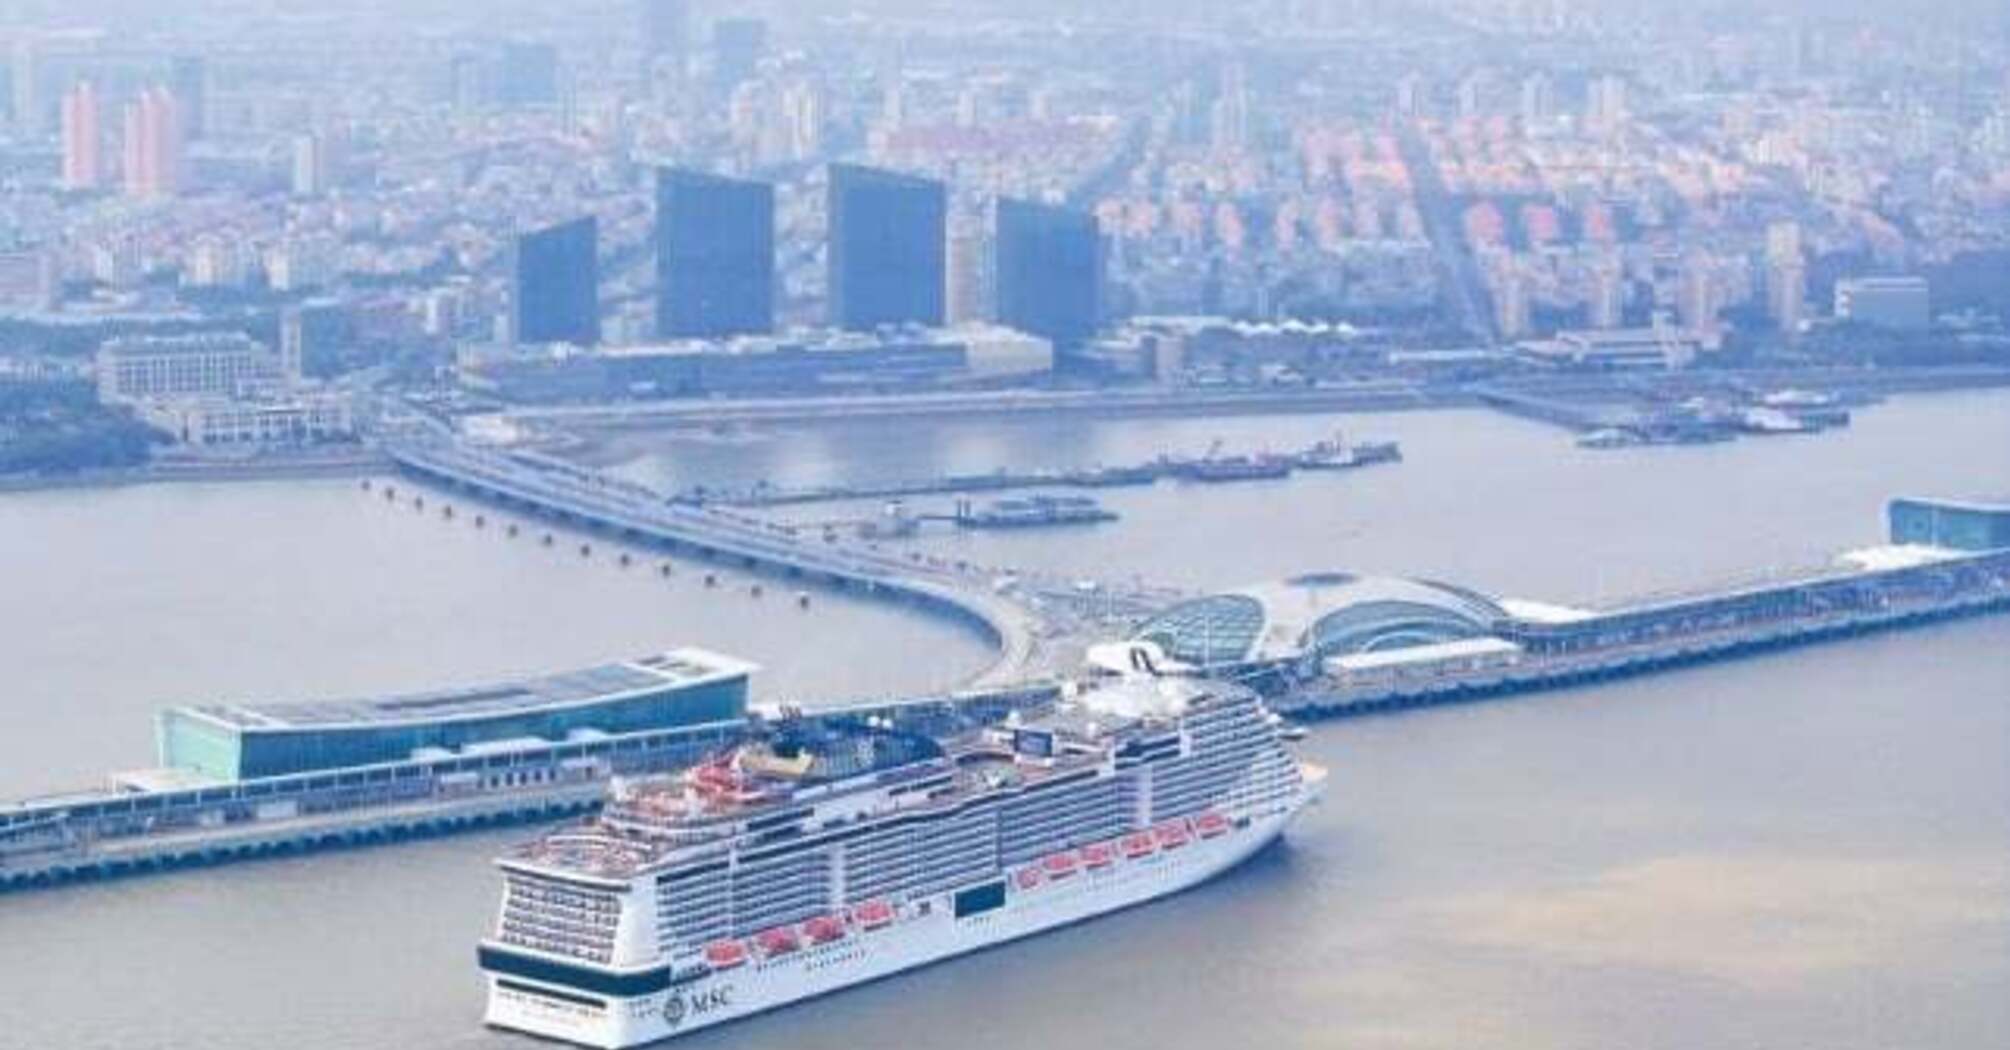 MSC Bellissima arrives in Shanghai to mark the return of international cruise ships